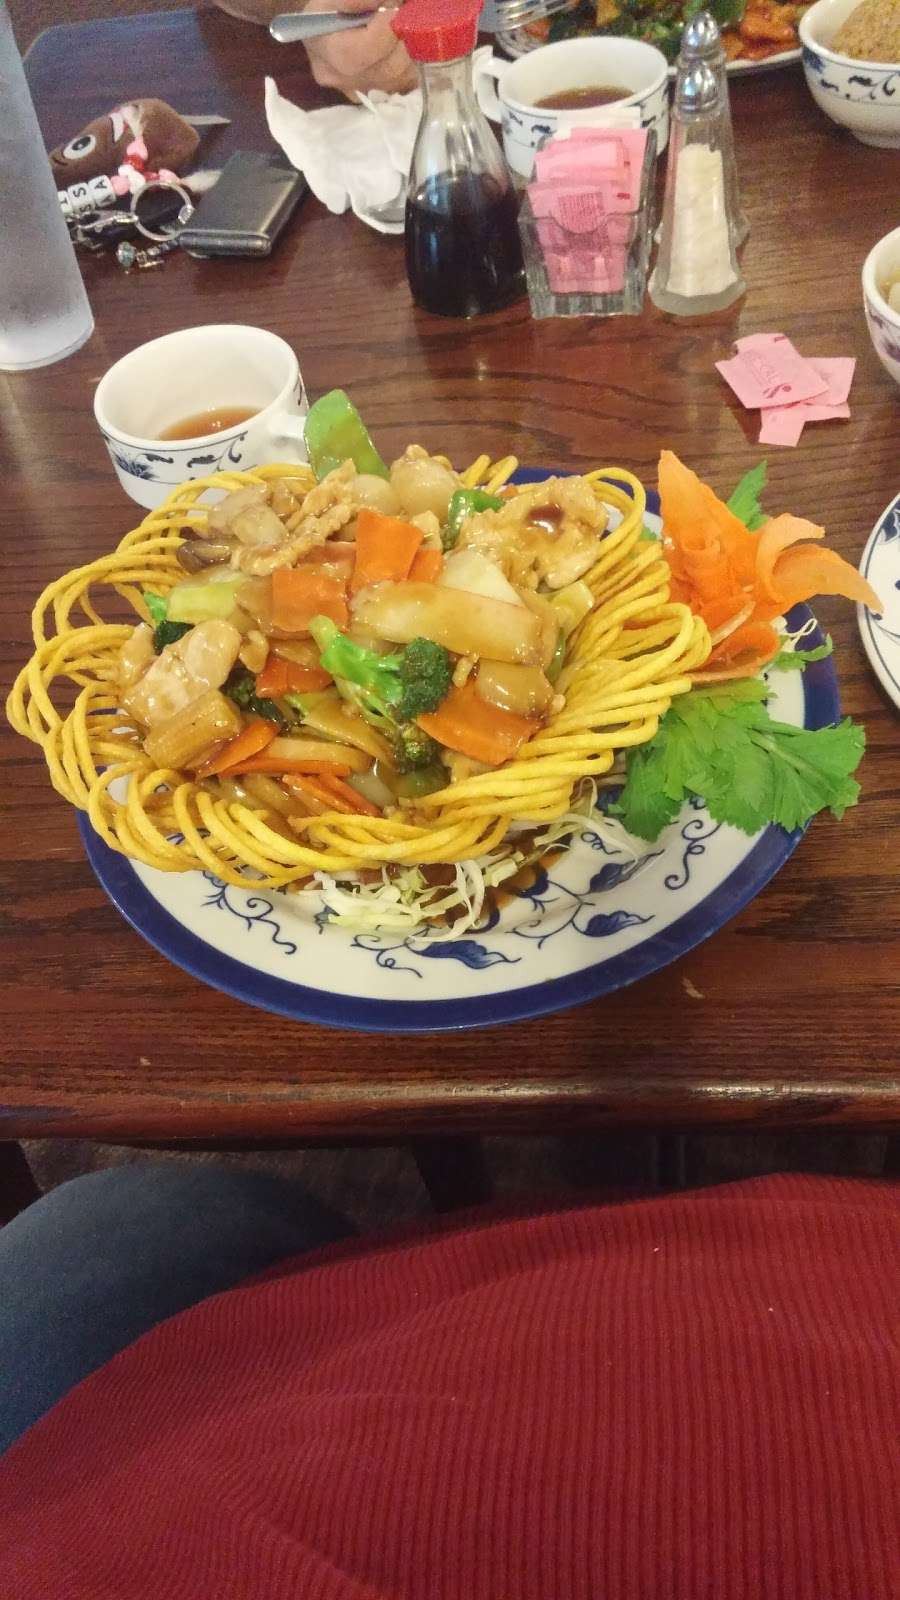 Hunan Restaurant | 214 S Walnut St, Cameron, MO 64429 | Phone: (816) 632-5585